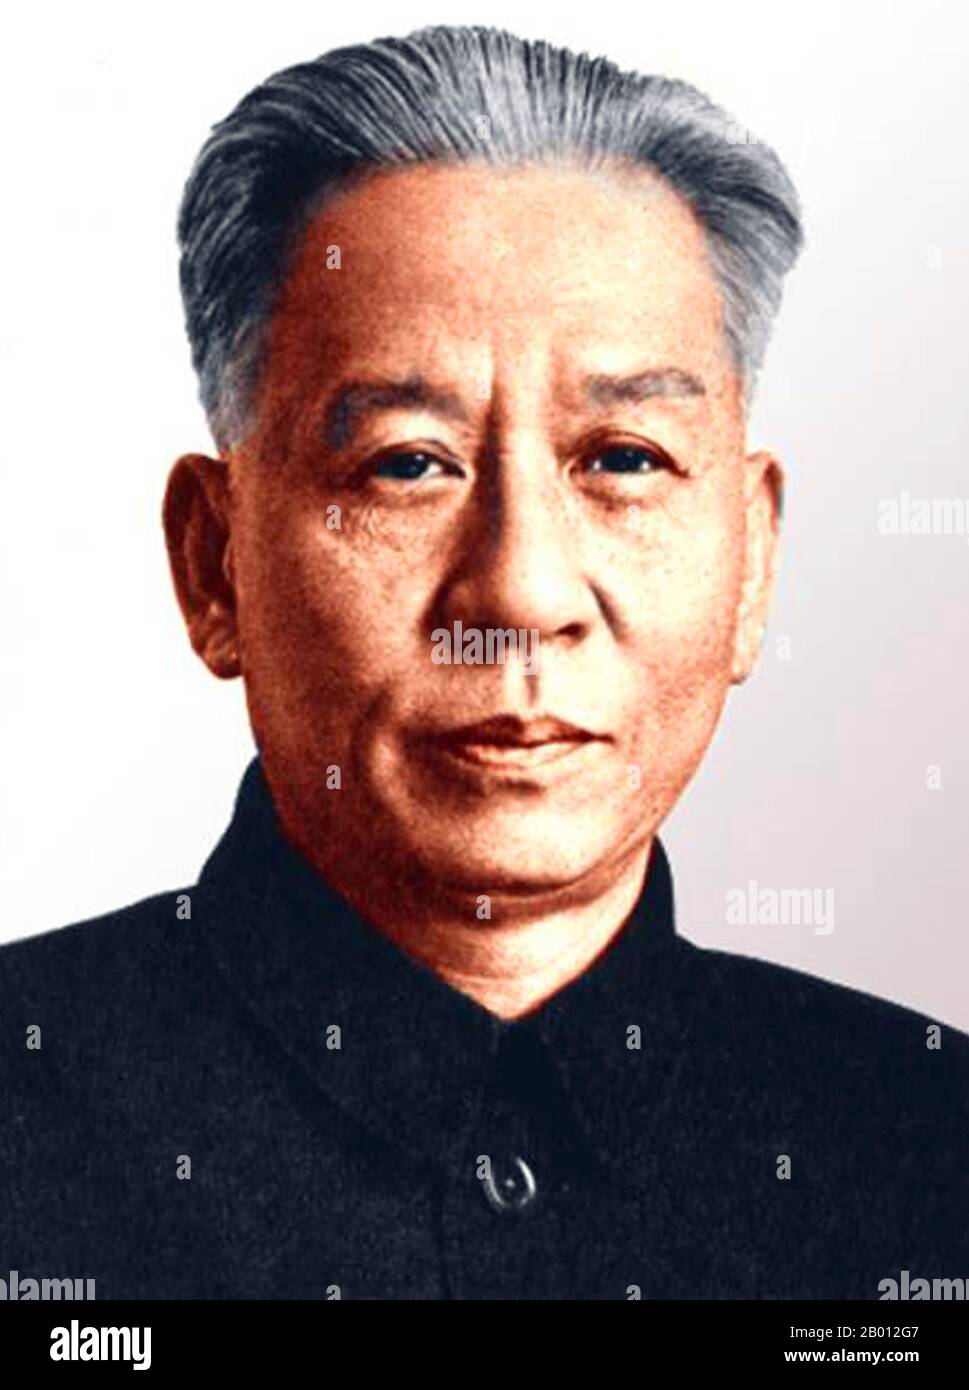 Cina: Liu Shaoqi (Liu Shao-ch'i, 1898-1969), Presidente della Repubblica popolare Cinese (aprile 1959 - ottobre 1968). Liu Shaoqi (Liu Shao-ch'i, 24 novembre 1898 – 1969 novembre 12) è stato un . Dal 27 aprile 1959 al 31 ottobre 1968 è stato presidente della Repubblica popolare cinese, capo di Stato cinese, durante il quale ha attuato politiche di ricostruzione economica in Cina. Alla fine degli anni sessanta, durante la Rivoluzione Culturale, si è fatto sentire a favore dei suoi punti di vista di destra e, viene teorizzato, perché Mao considerava Liu come una minaccia Foto Stock